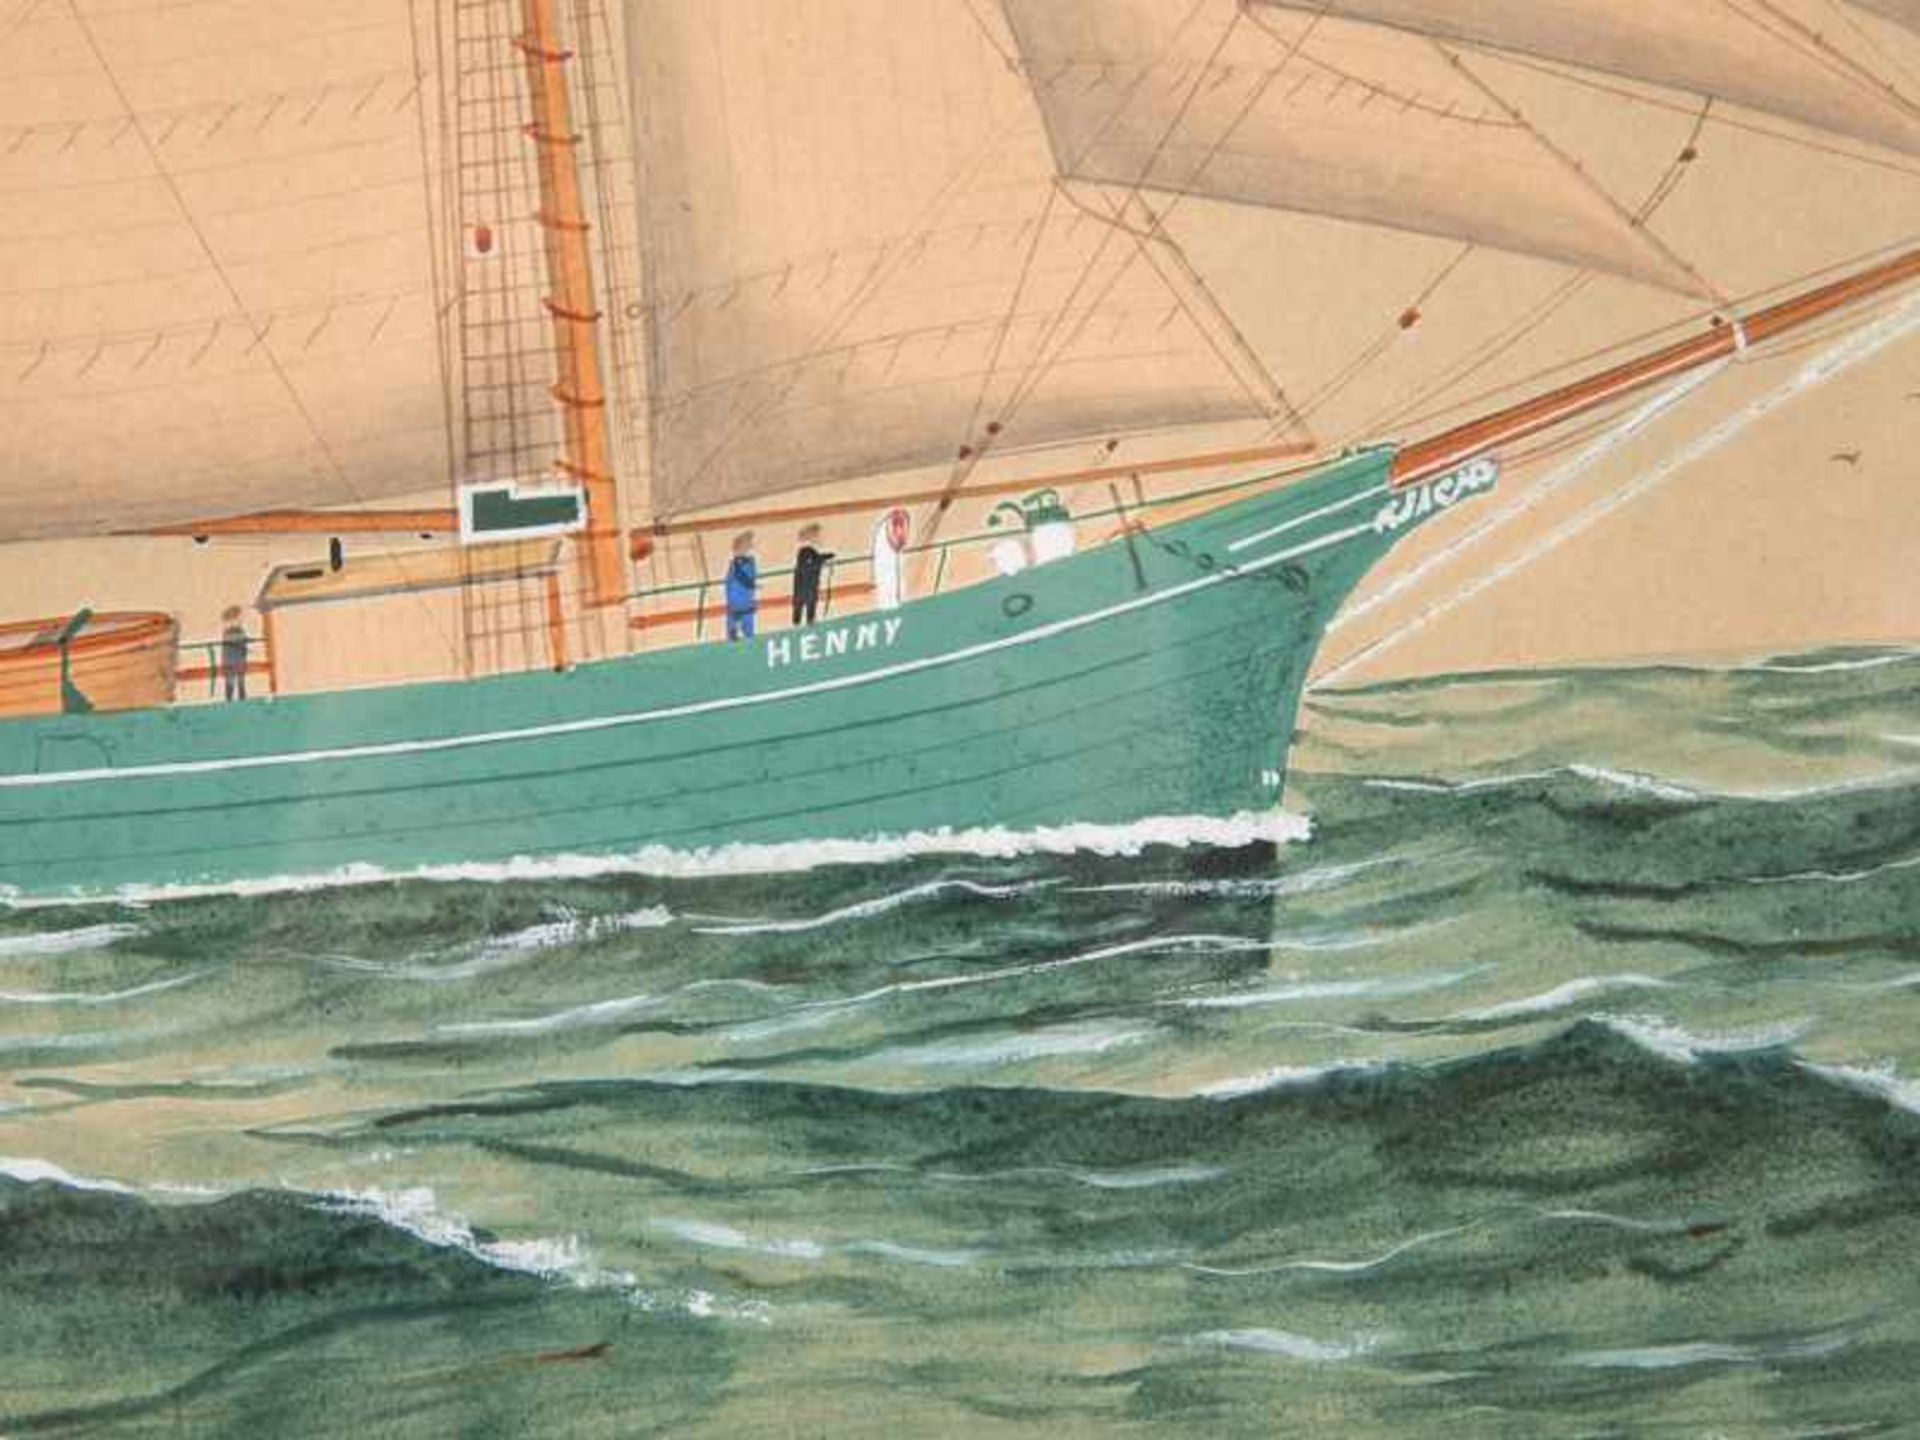 Chappell, Reuben (1870 - 1940), zugeschrieben. Schiffsportrait/Kapitänsbild der Schoneryacht "Henny" - Bild 8 aus 9